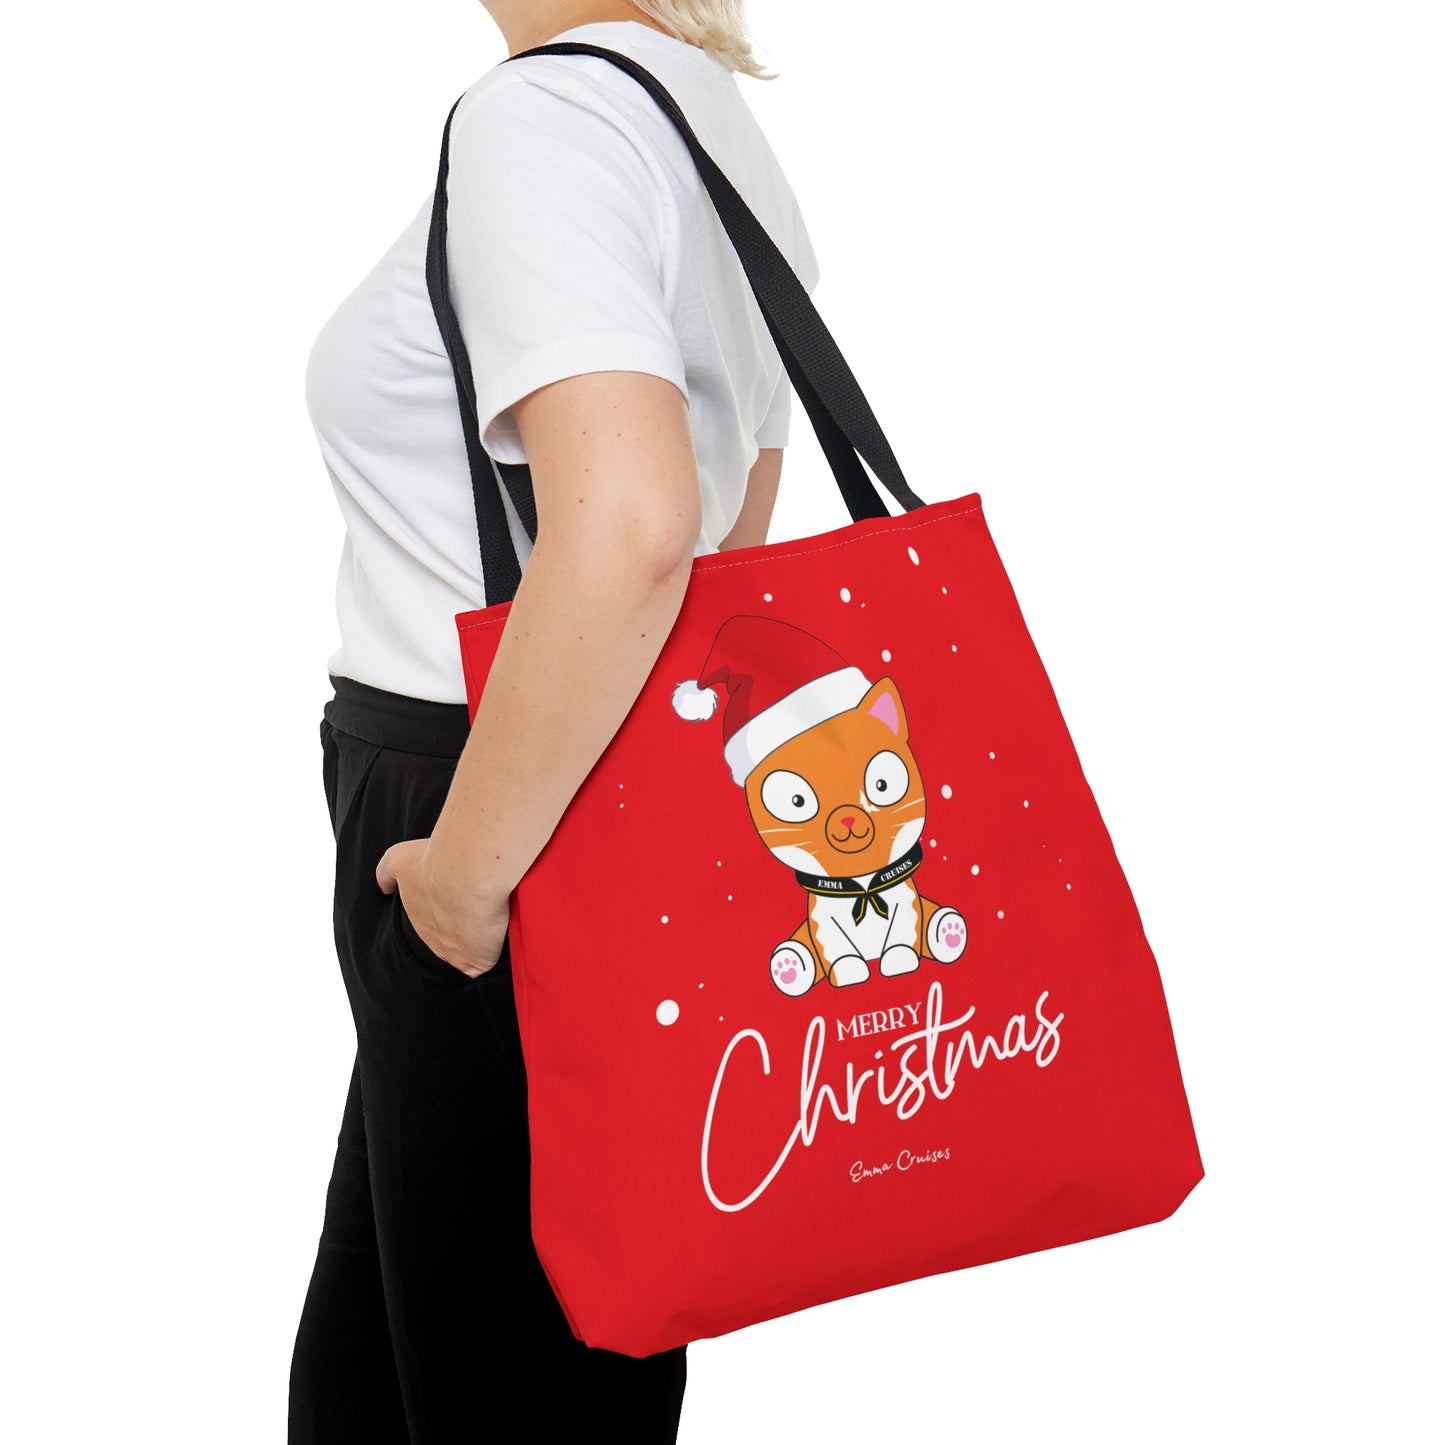 Merry Christmas - Bag